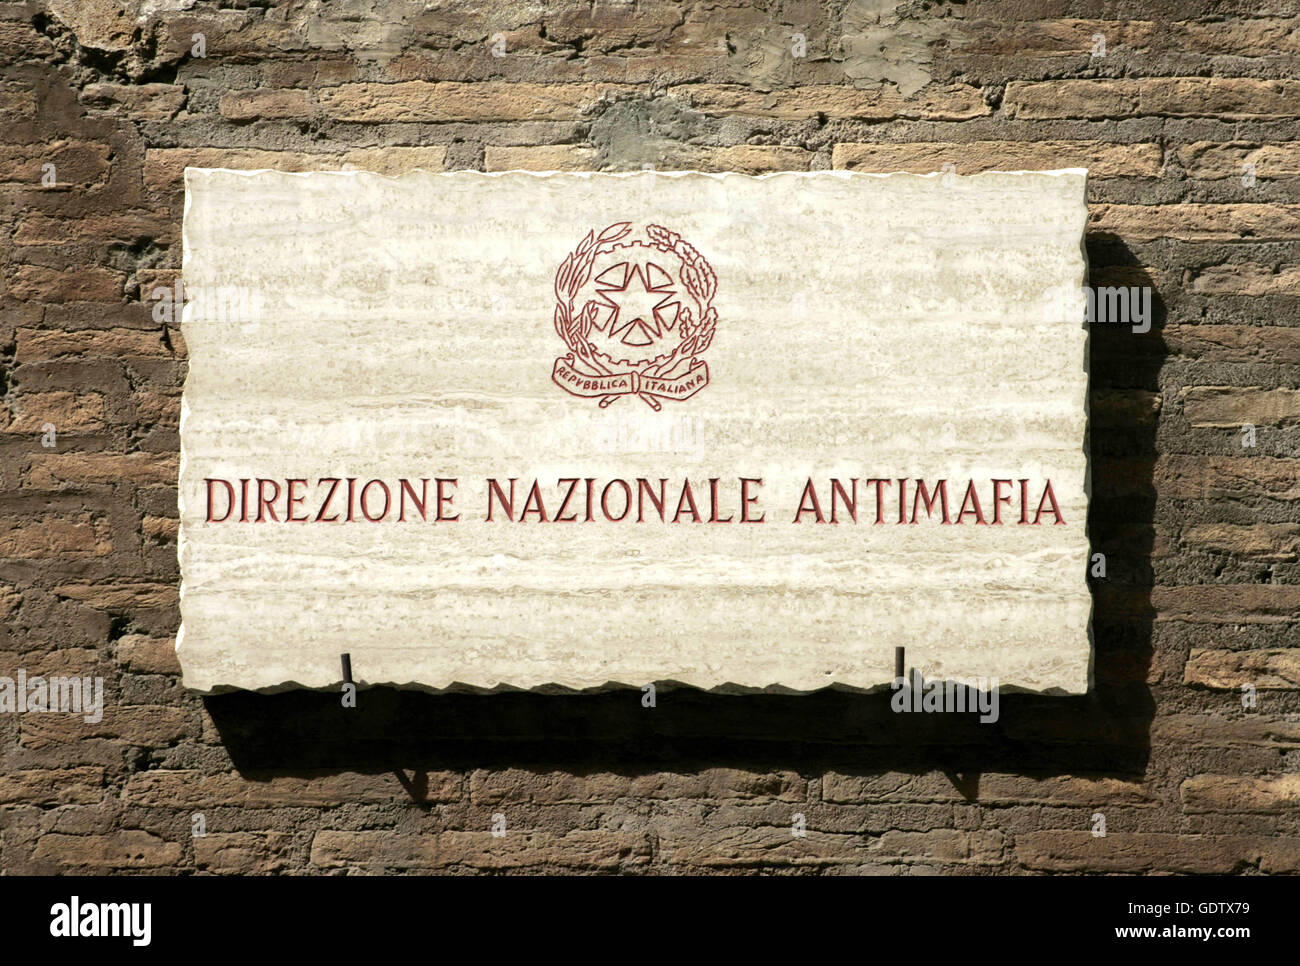 Direzione Nazionale Antimafia (National Anti-Mafia Directorate) Stock Photo